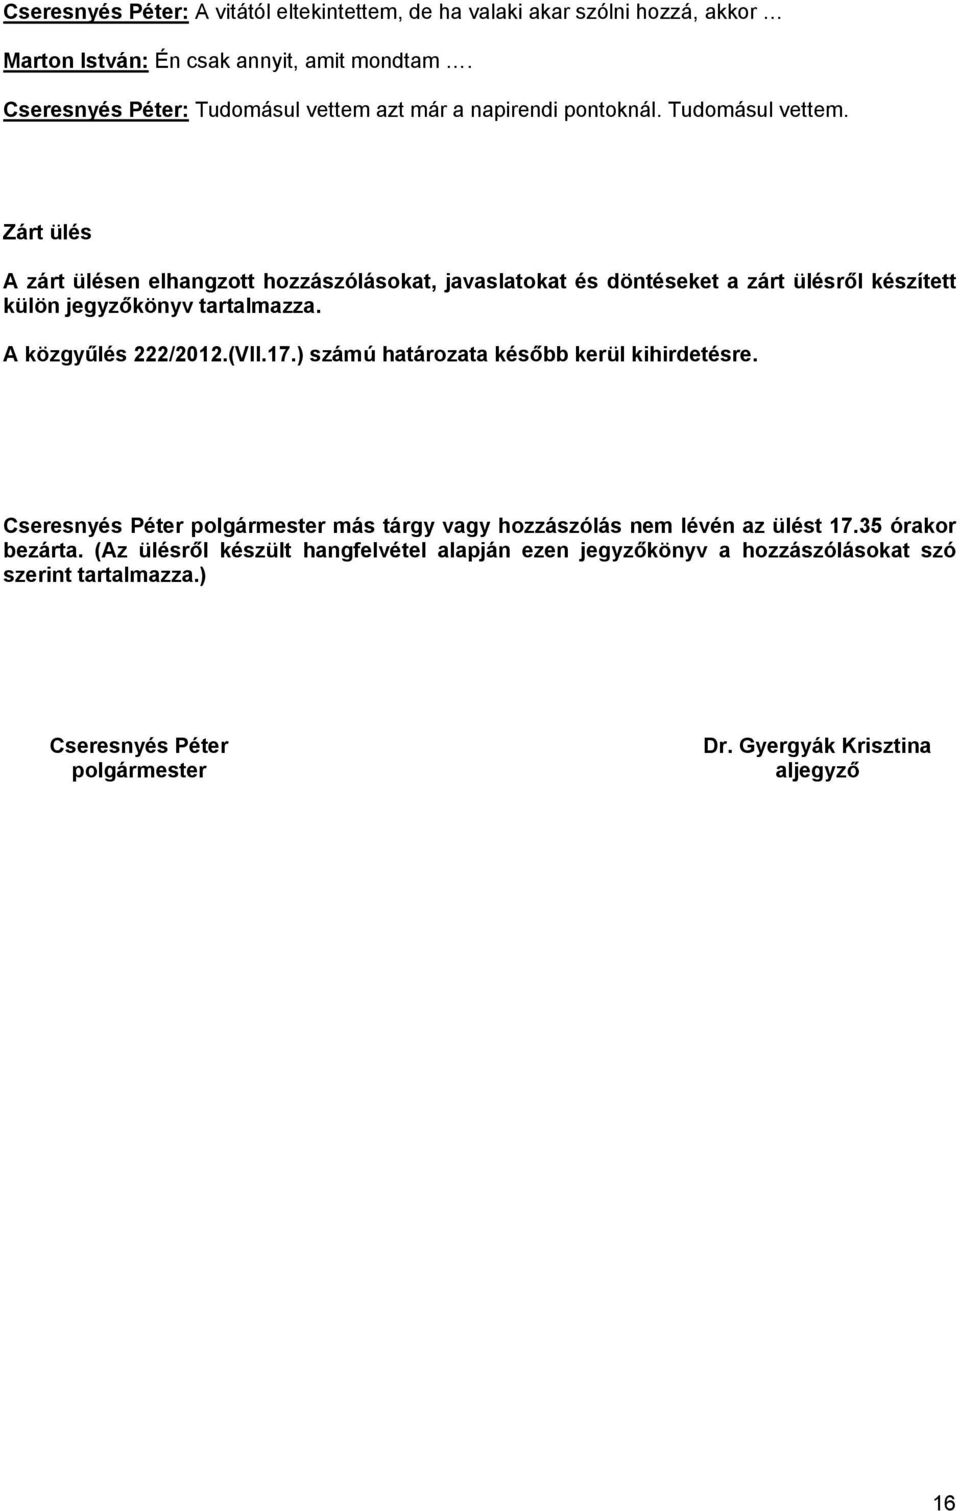 A közgyűlés 222/2012.(VII.17.) számú határozata később kerül kihirdetésre. Cseresnyés Péter polgármester más tárgy vagy hozzászólás nem lévén az ülést 17.